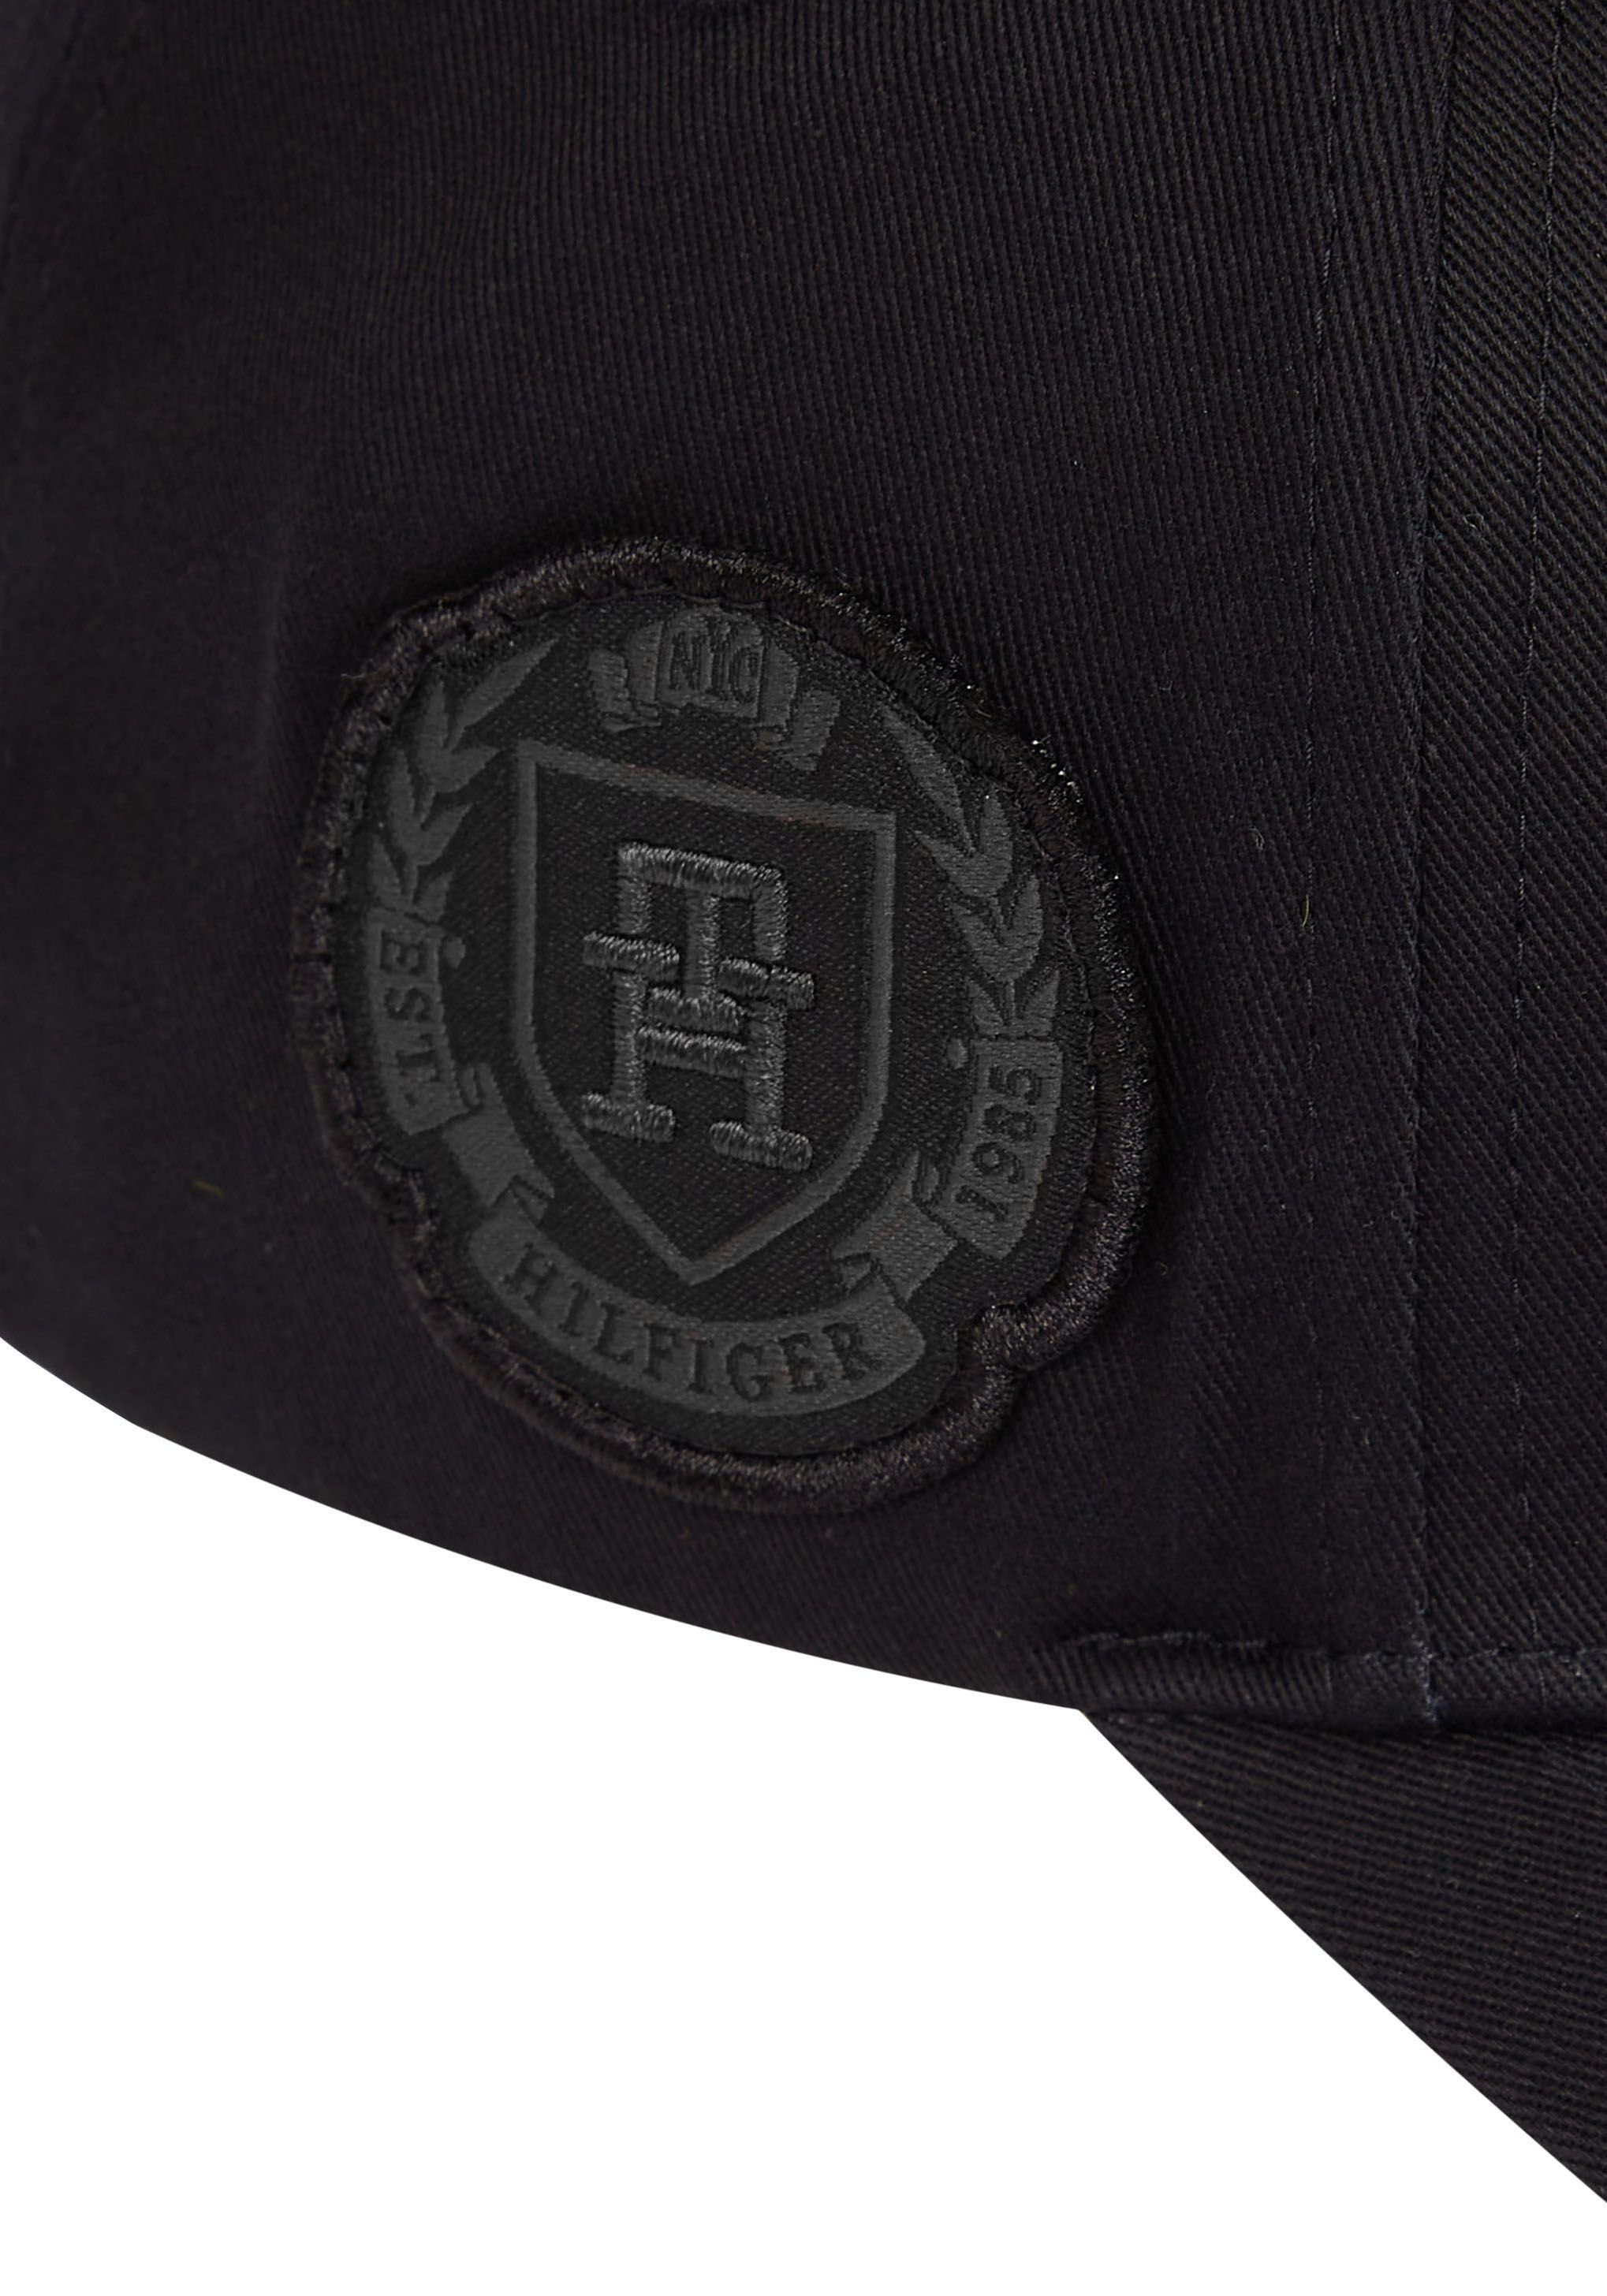 Tommy Hilfiger mit Baseball Logostickereien schwarz Cap